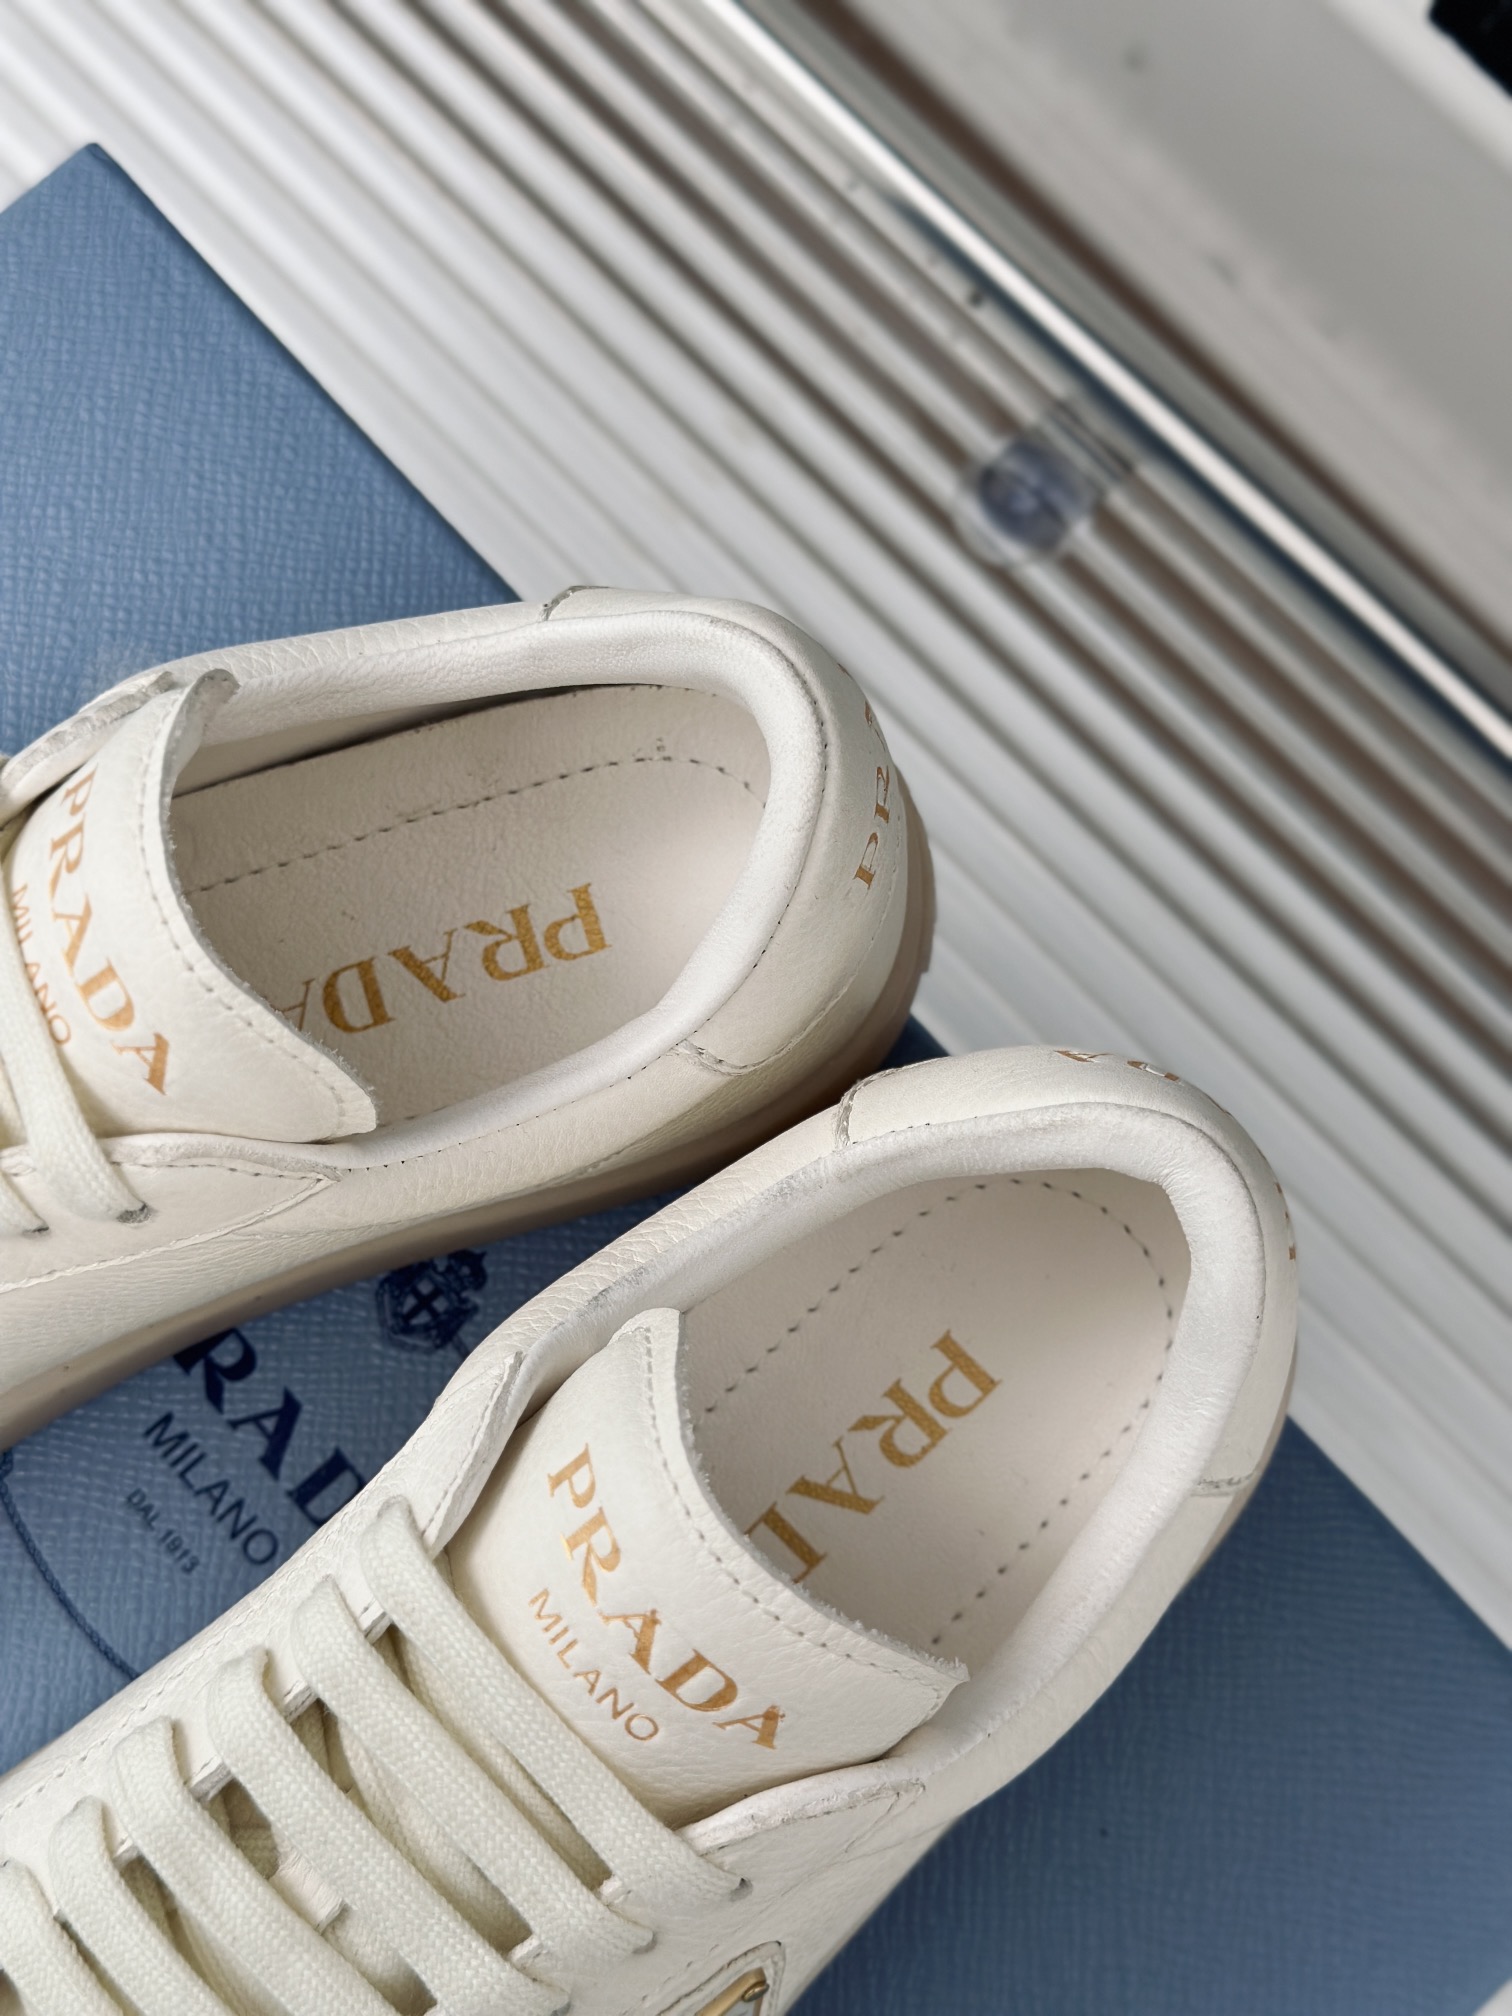 Prada/普拉达24新品小白鞋爱死这分的简单感鞋型非常秀气且不软榻脚感也是相当舒服一年四季都不愁穿搭面